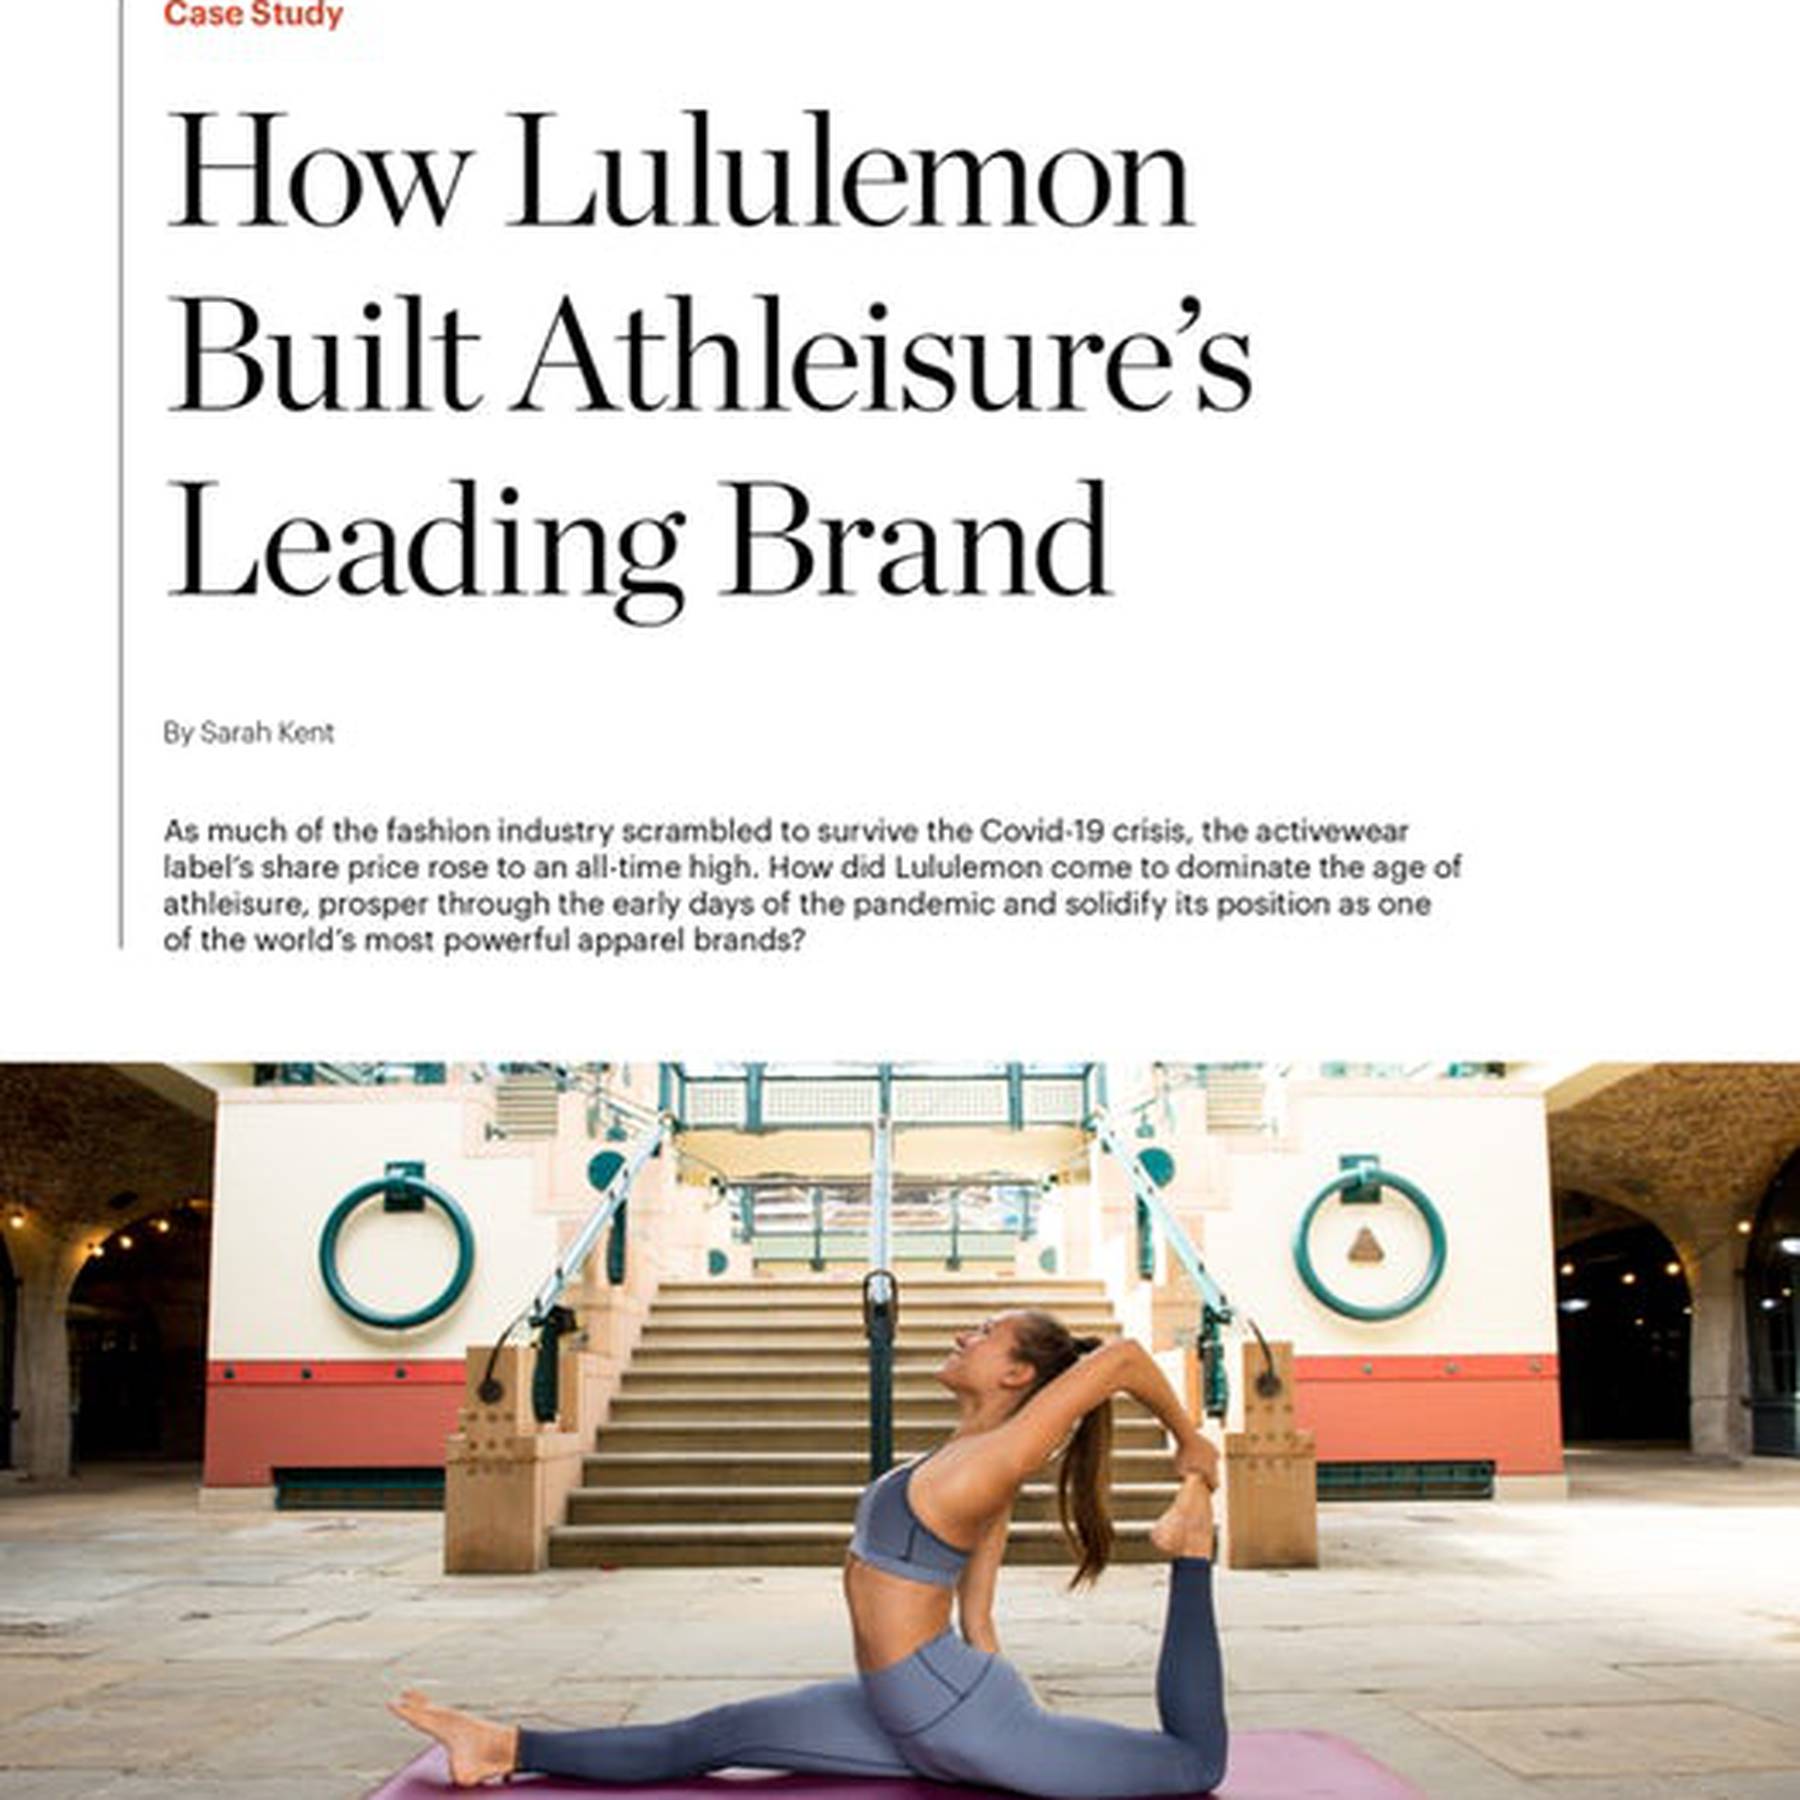 Lululemon: Powerful Growth Story, Share Near Fair Value With